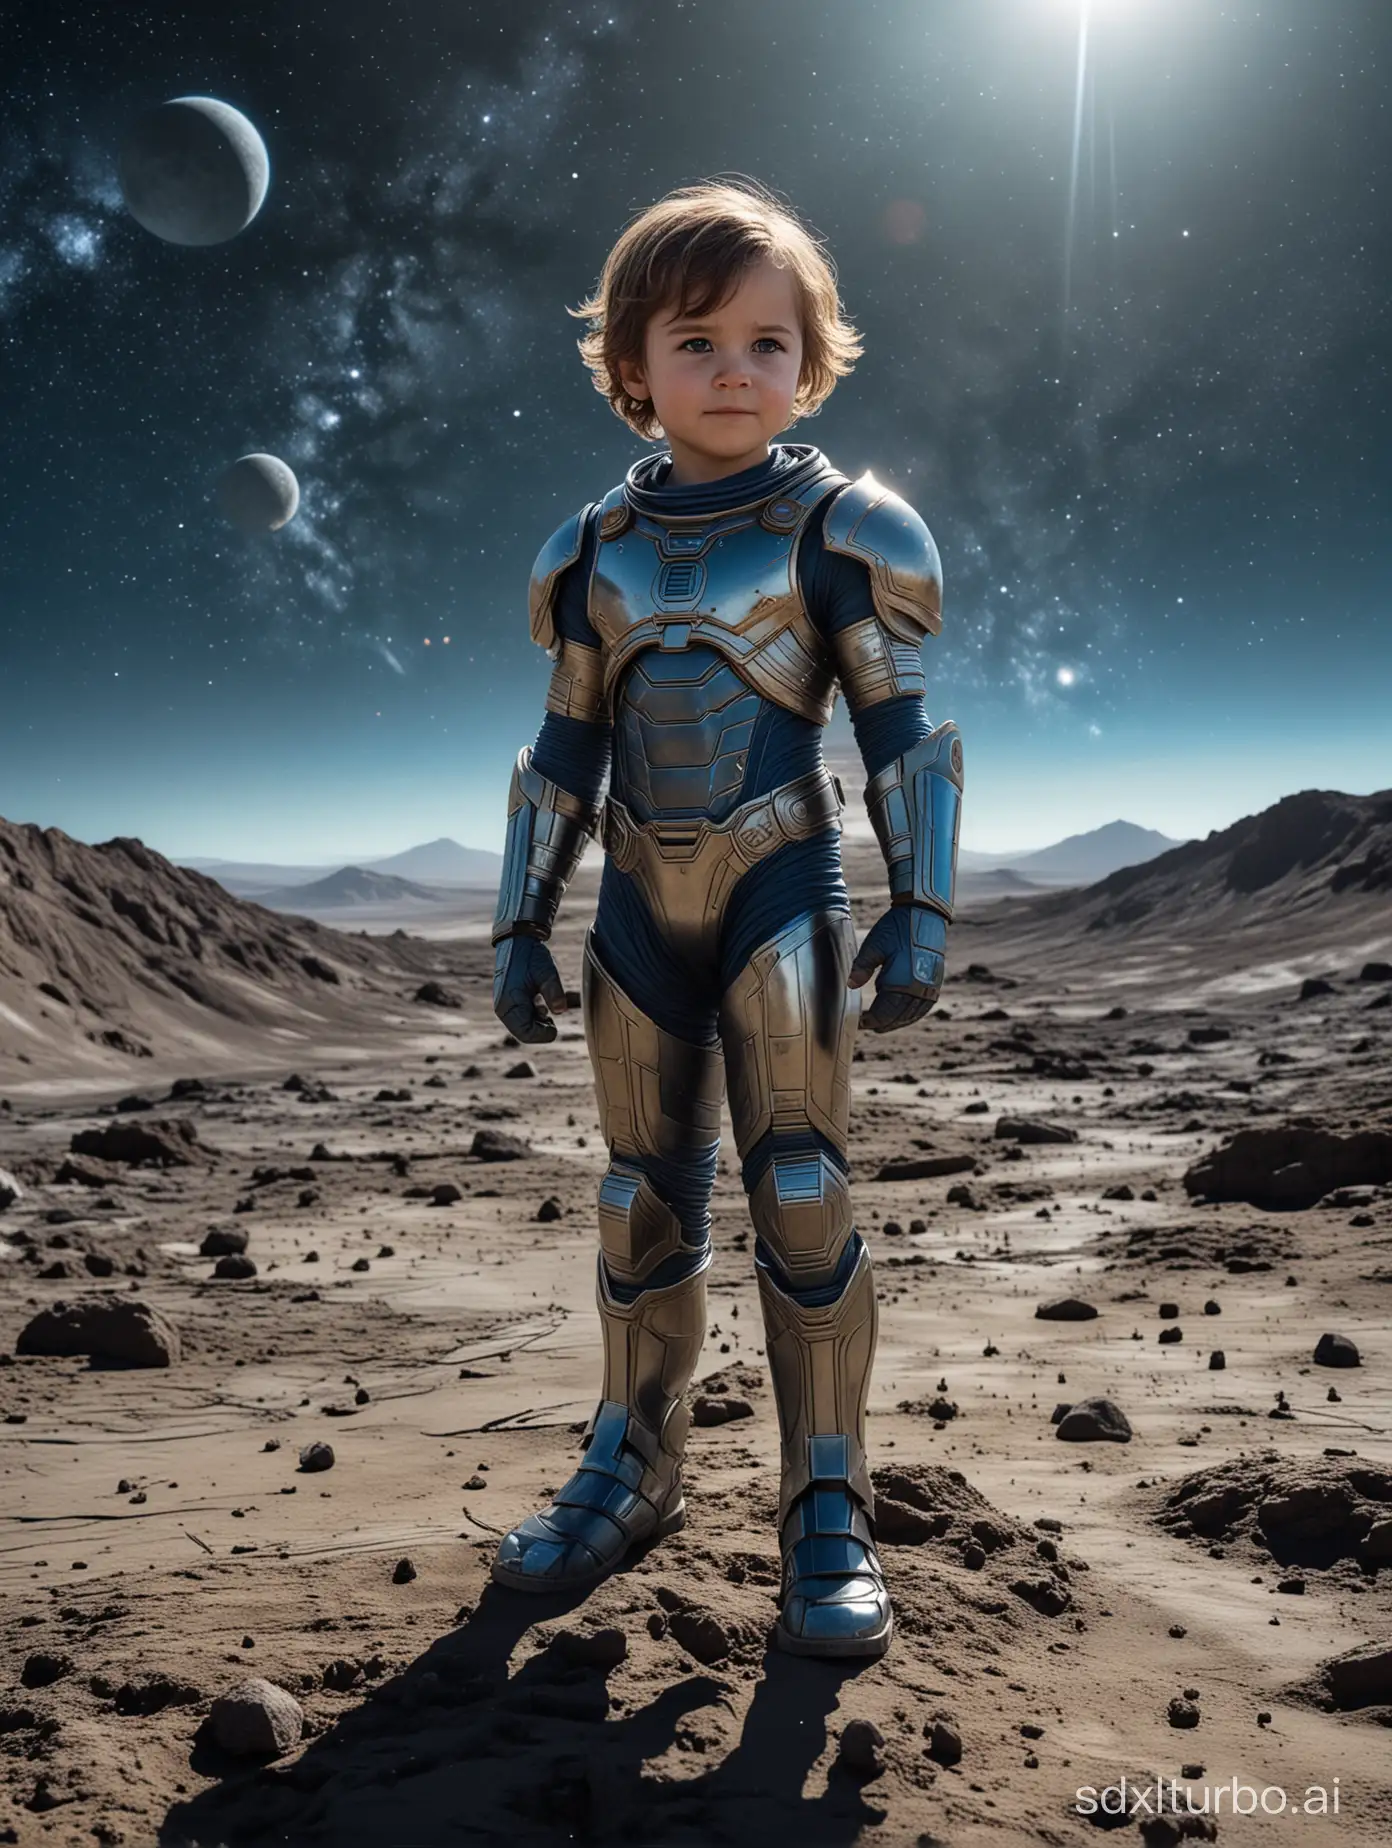 一个儿童，全身，面对镜头，能看见五官及头发，变成漫威英雄穿着盔甲站在月球表面，背后有蓝色星球，银河星系若影若现，偏暗